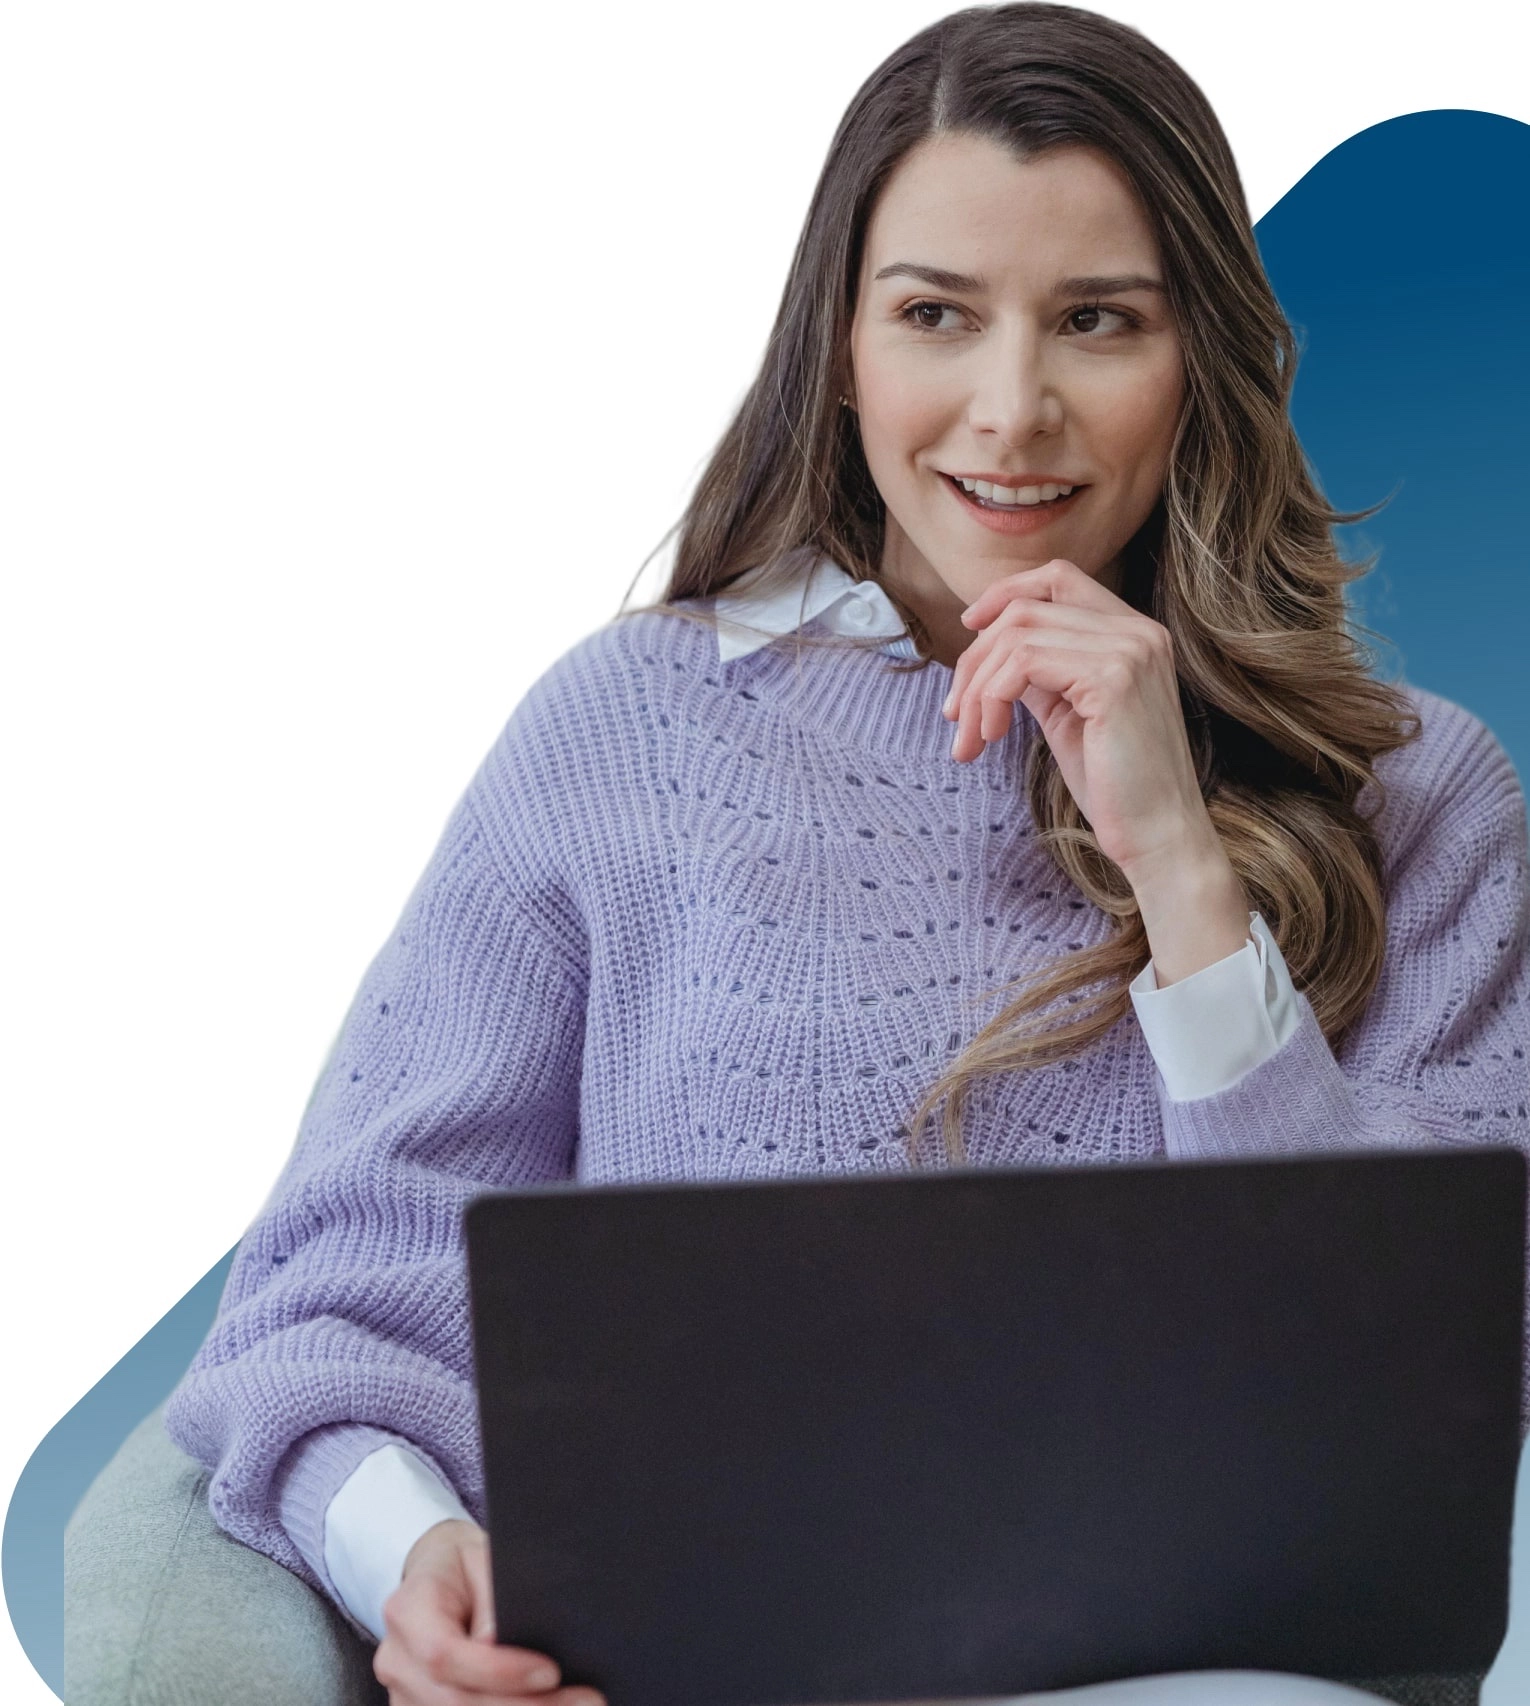 Junge Frau mit lila Oberteil und weißem Hemd, sitzt am Laptop, lächelt, betrachtet nachdenklich den Text 'Ihre IT-Pauschale einfach berechnen'.